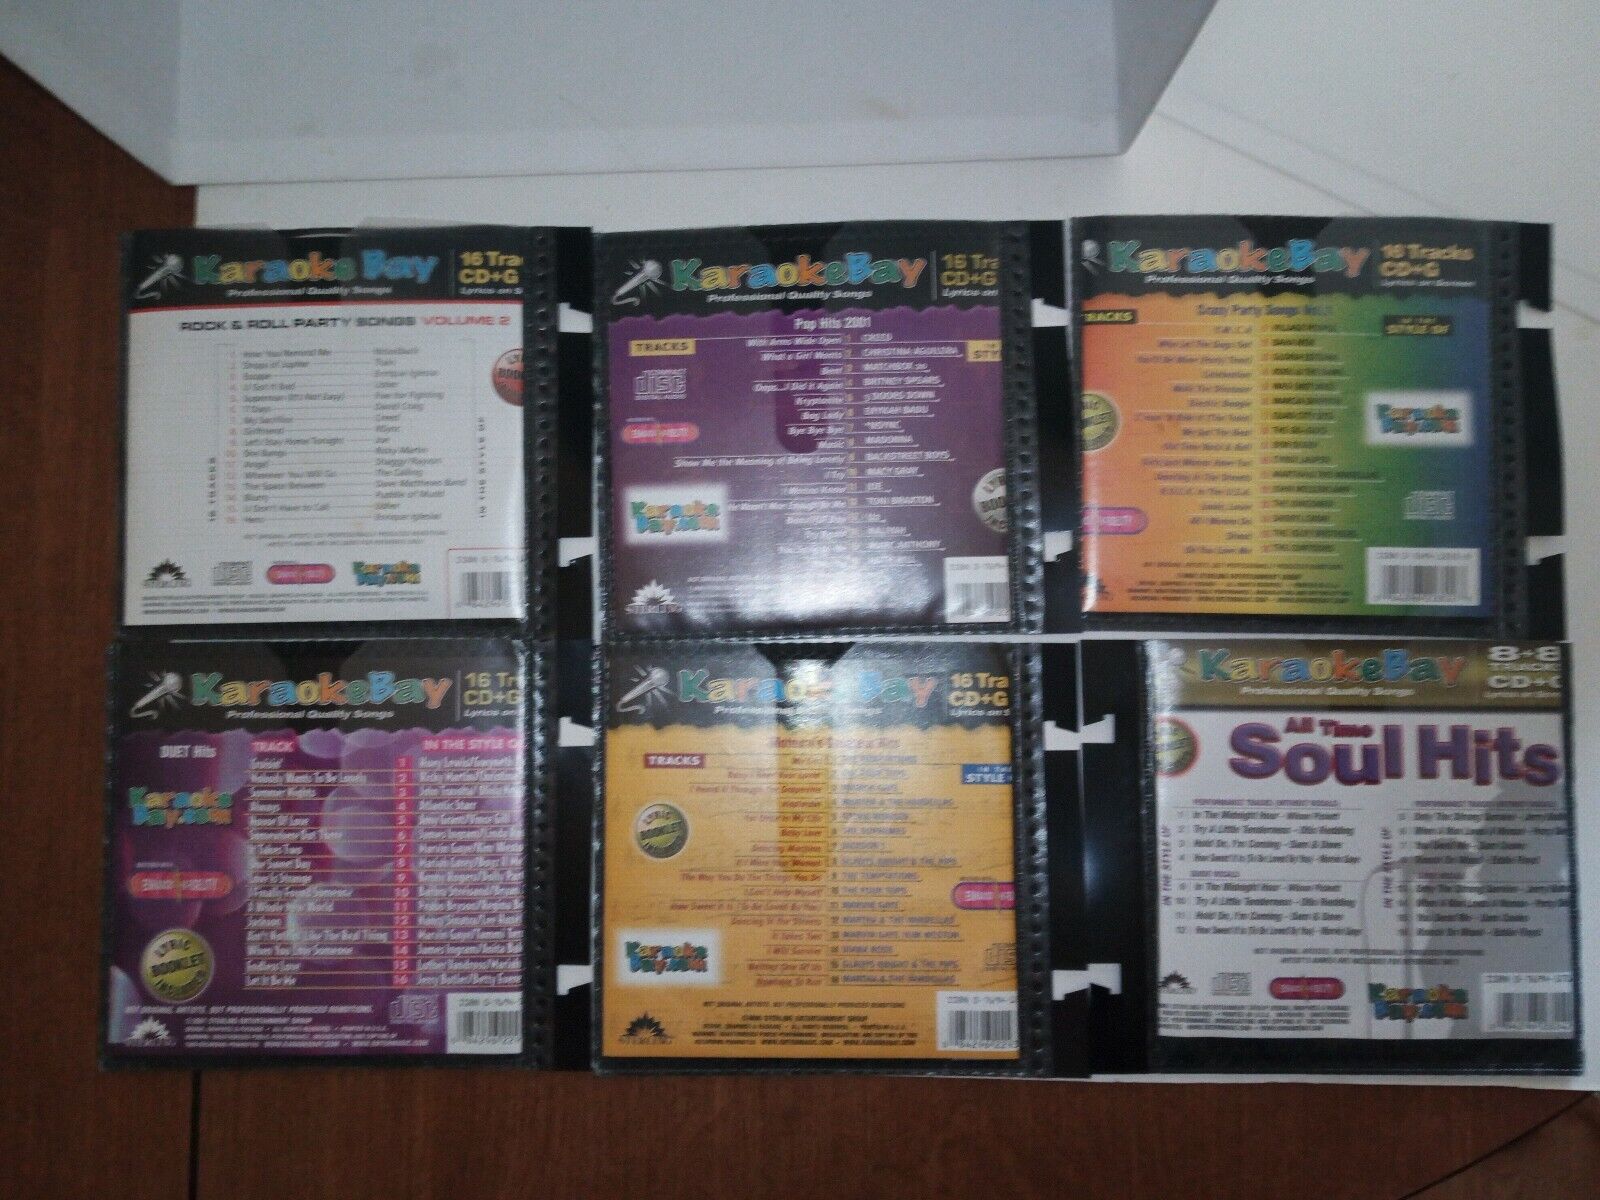 Karaoke Bay Karaoke Discs 6  Genres Rock -Pop-Soul-Duet-Motown-Party CD+G Karaoke Bay - фотография #2